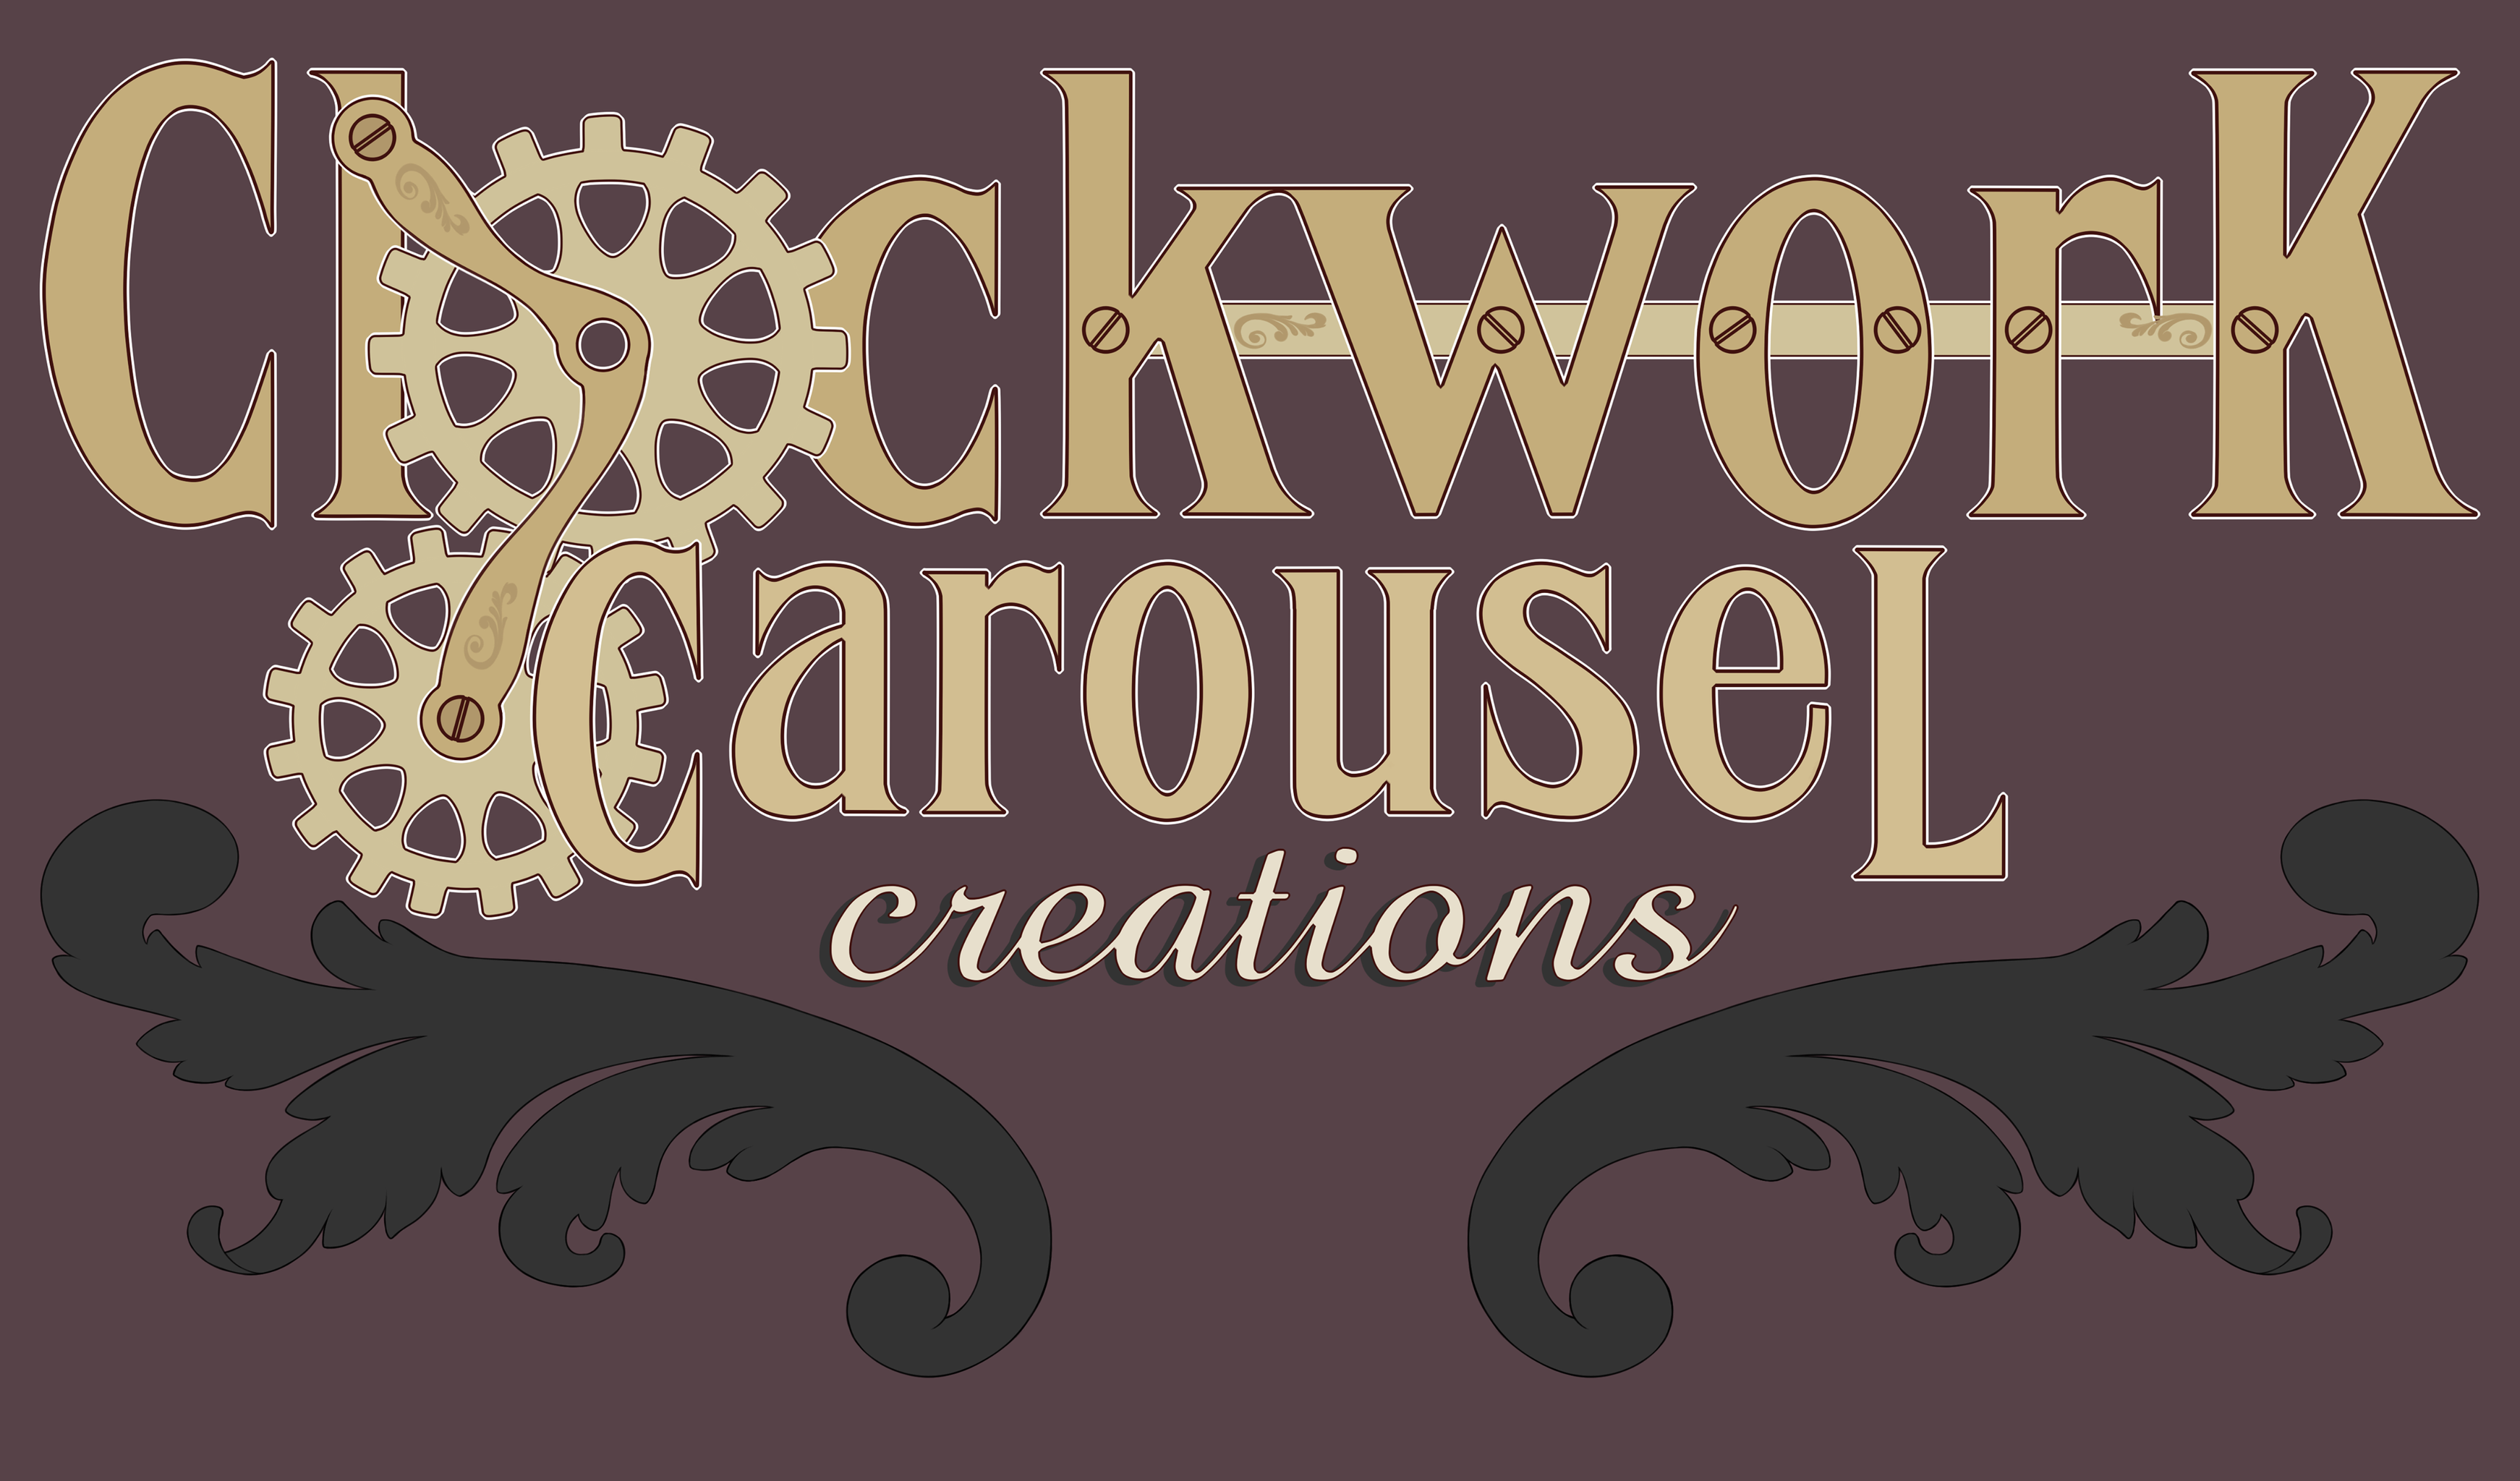 Clockwork Carousel